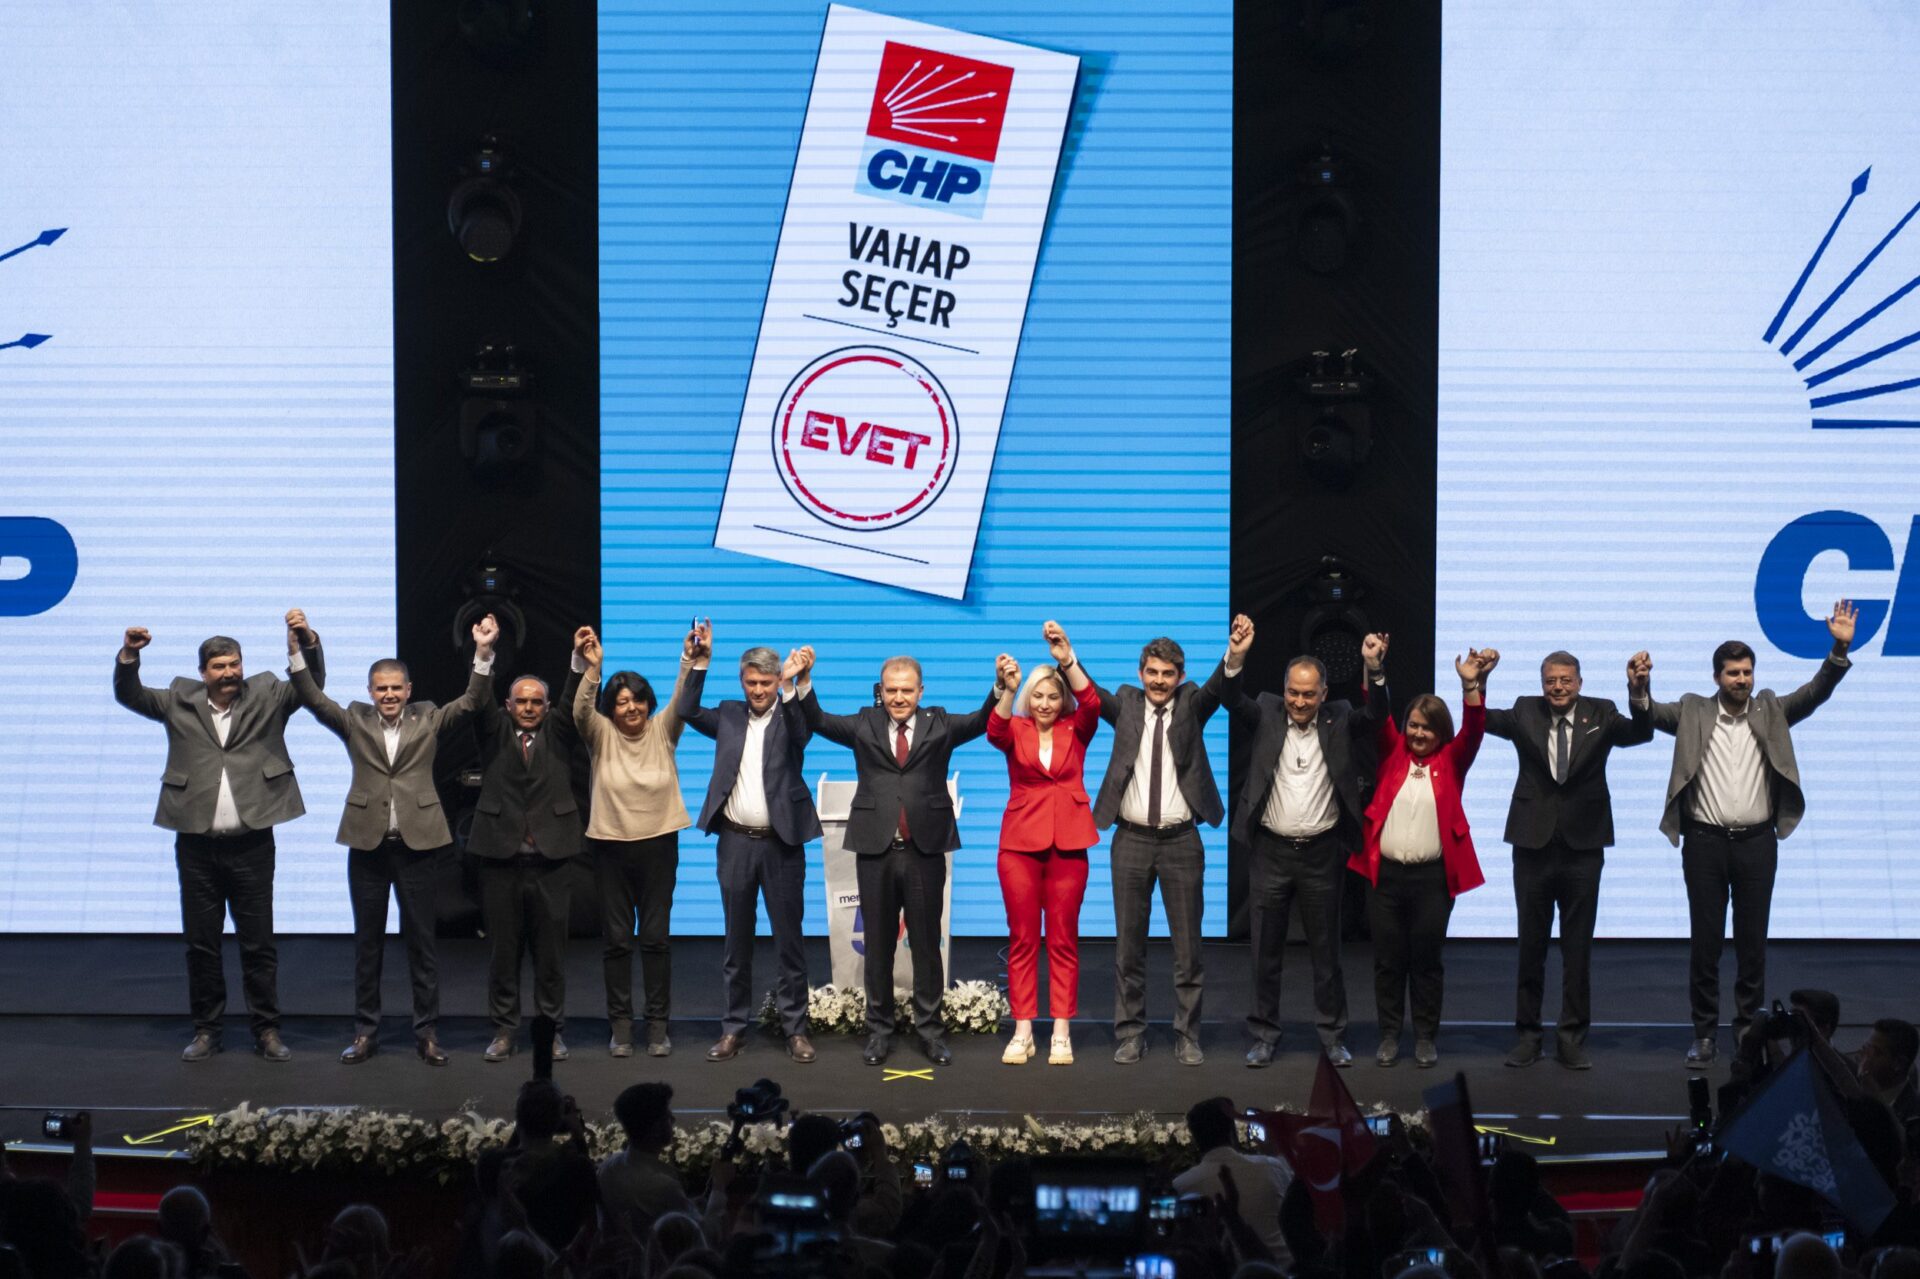 Vahap Seçer, Türkiye’ye Model Olacak Projeden Bahsetti; “Sosyal Konut Projesi”